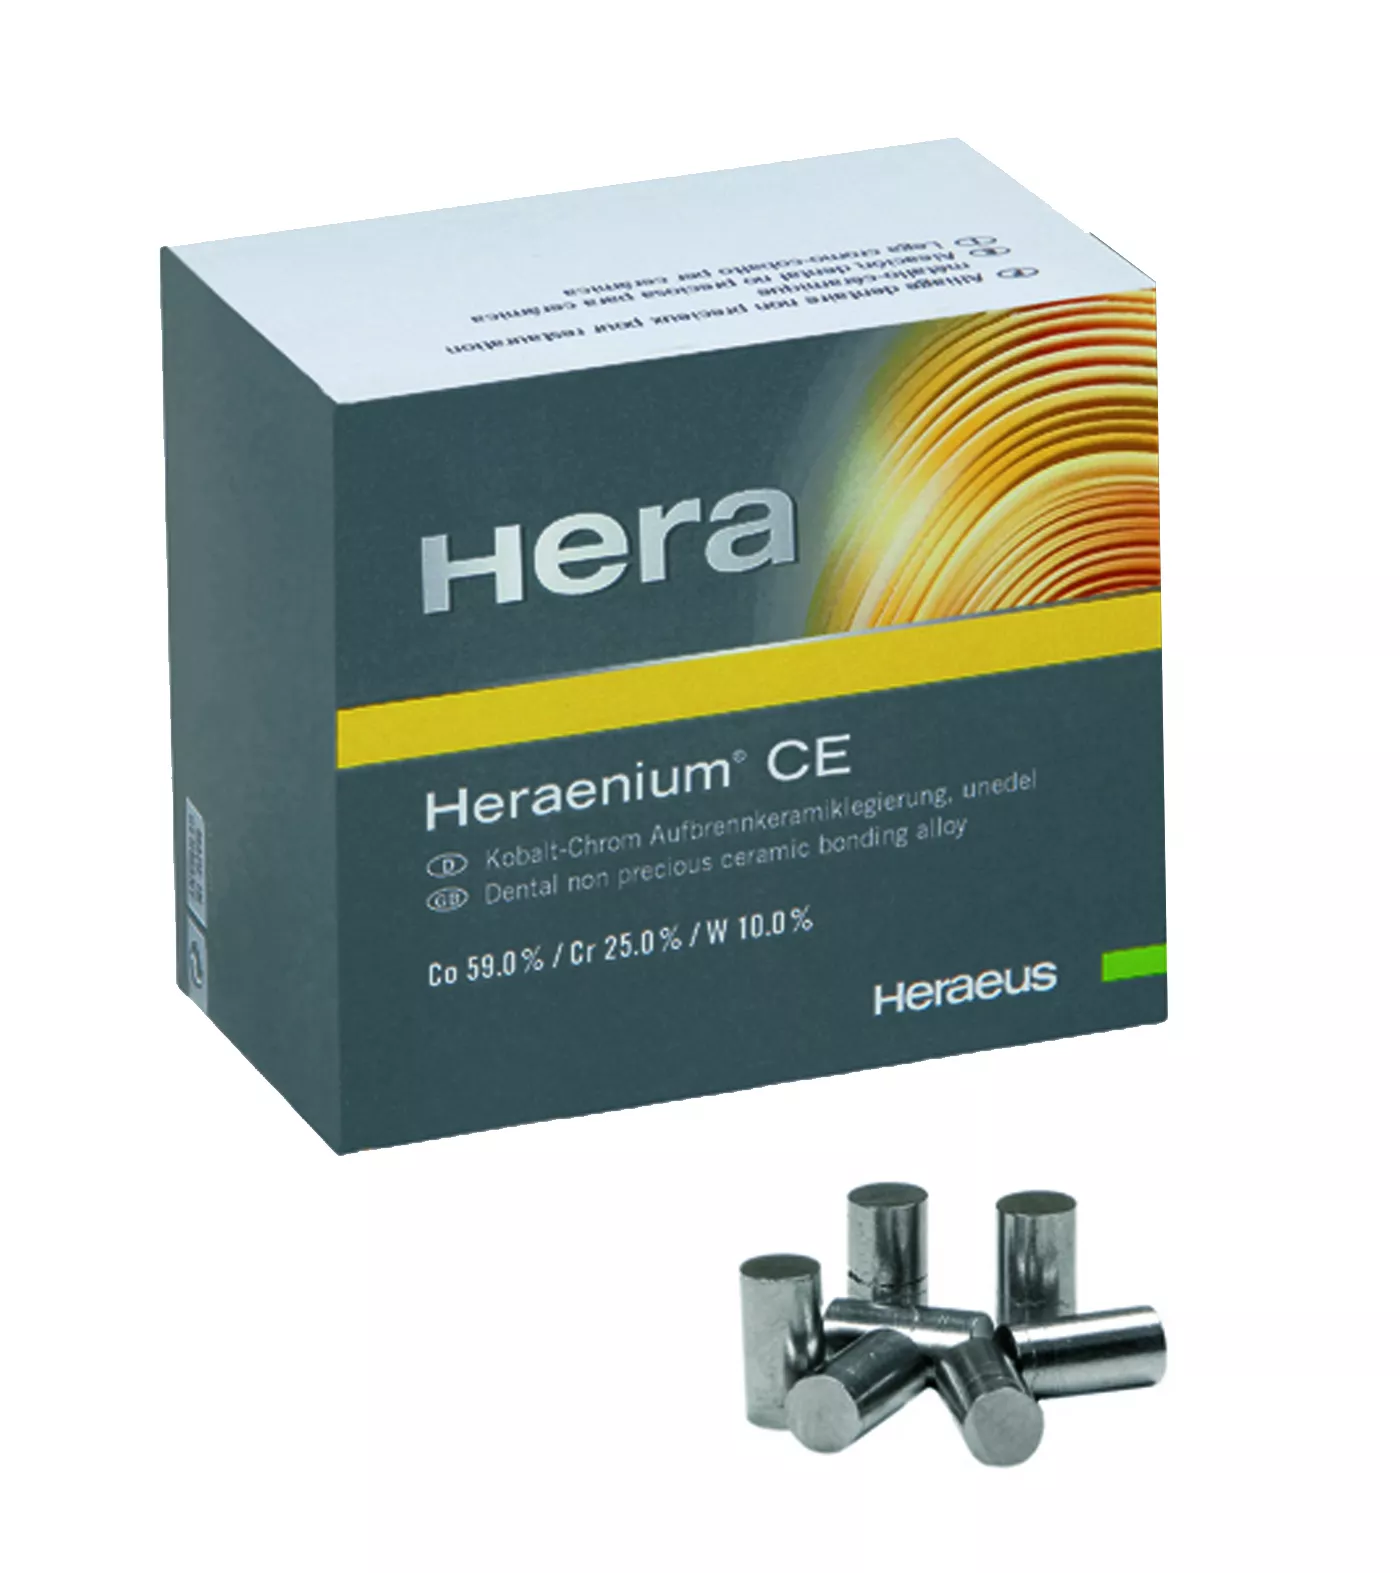 Heraenium CE  (1000г) дентальный сплав для бюгелей (Co, Cr, Mo)